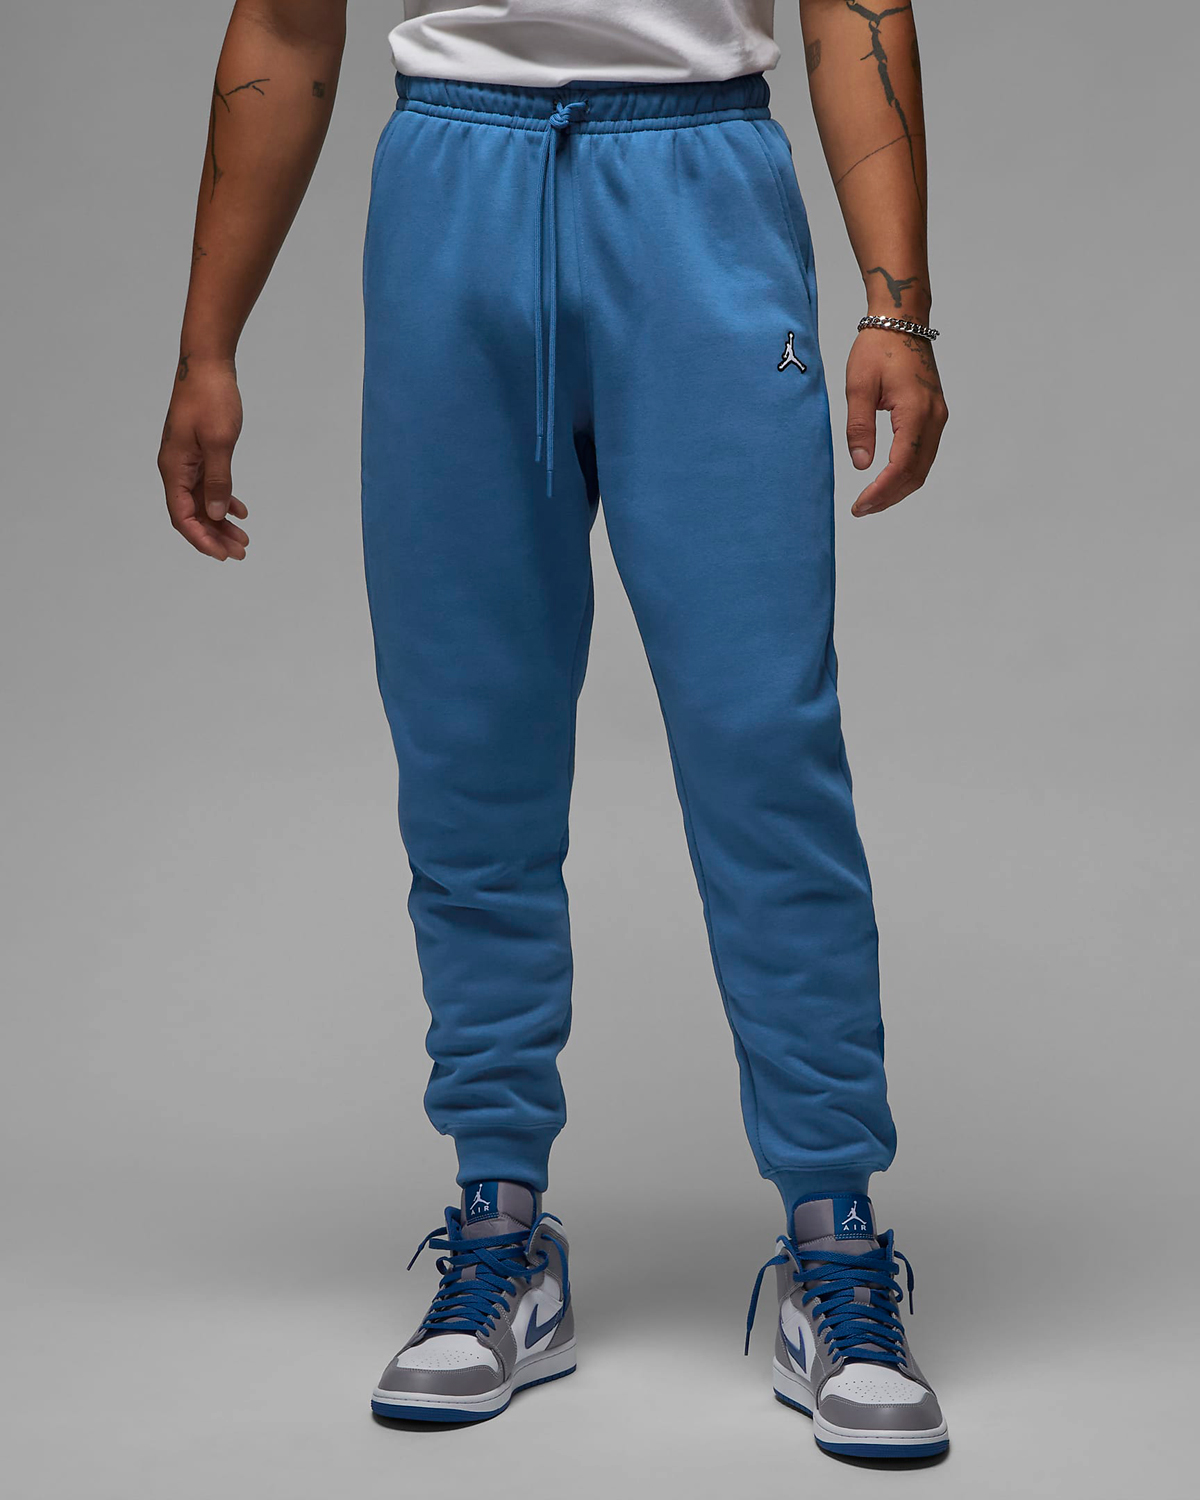 Jordan-True-Blue-Brooklyn-Fleece-Pants